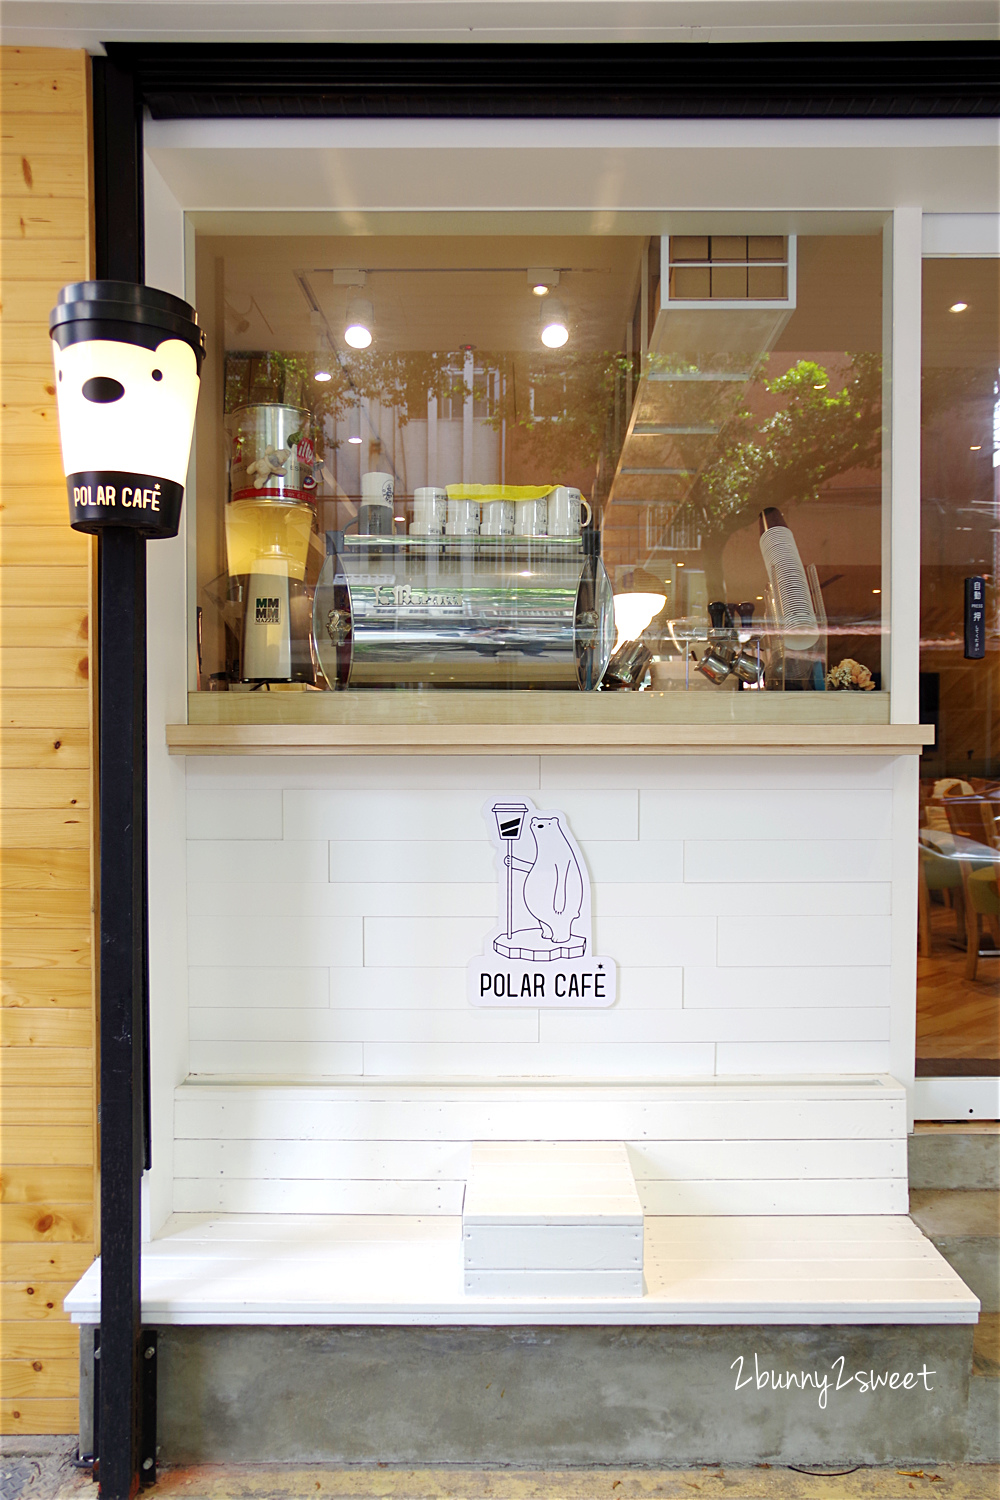 [台北。咖啡廳] POLAR CAFE ~北極熊不只躲在咖啡廳各個角落，還漂浮在飲料上～超療癒北極熊主題咖啡廳｜IG熱門咖啡廳｜民生社區 @兔兒毛毛姊妹花